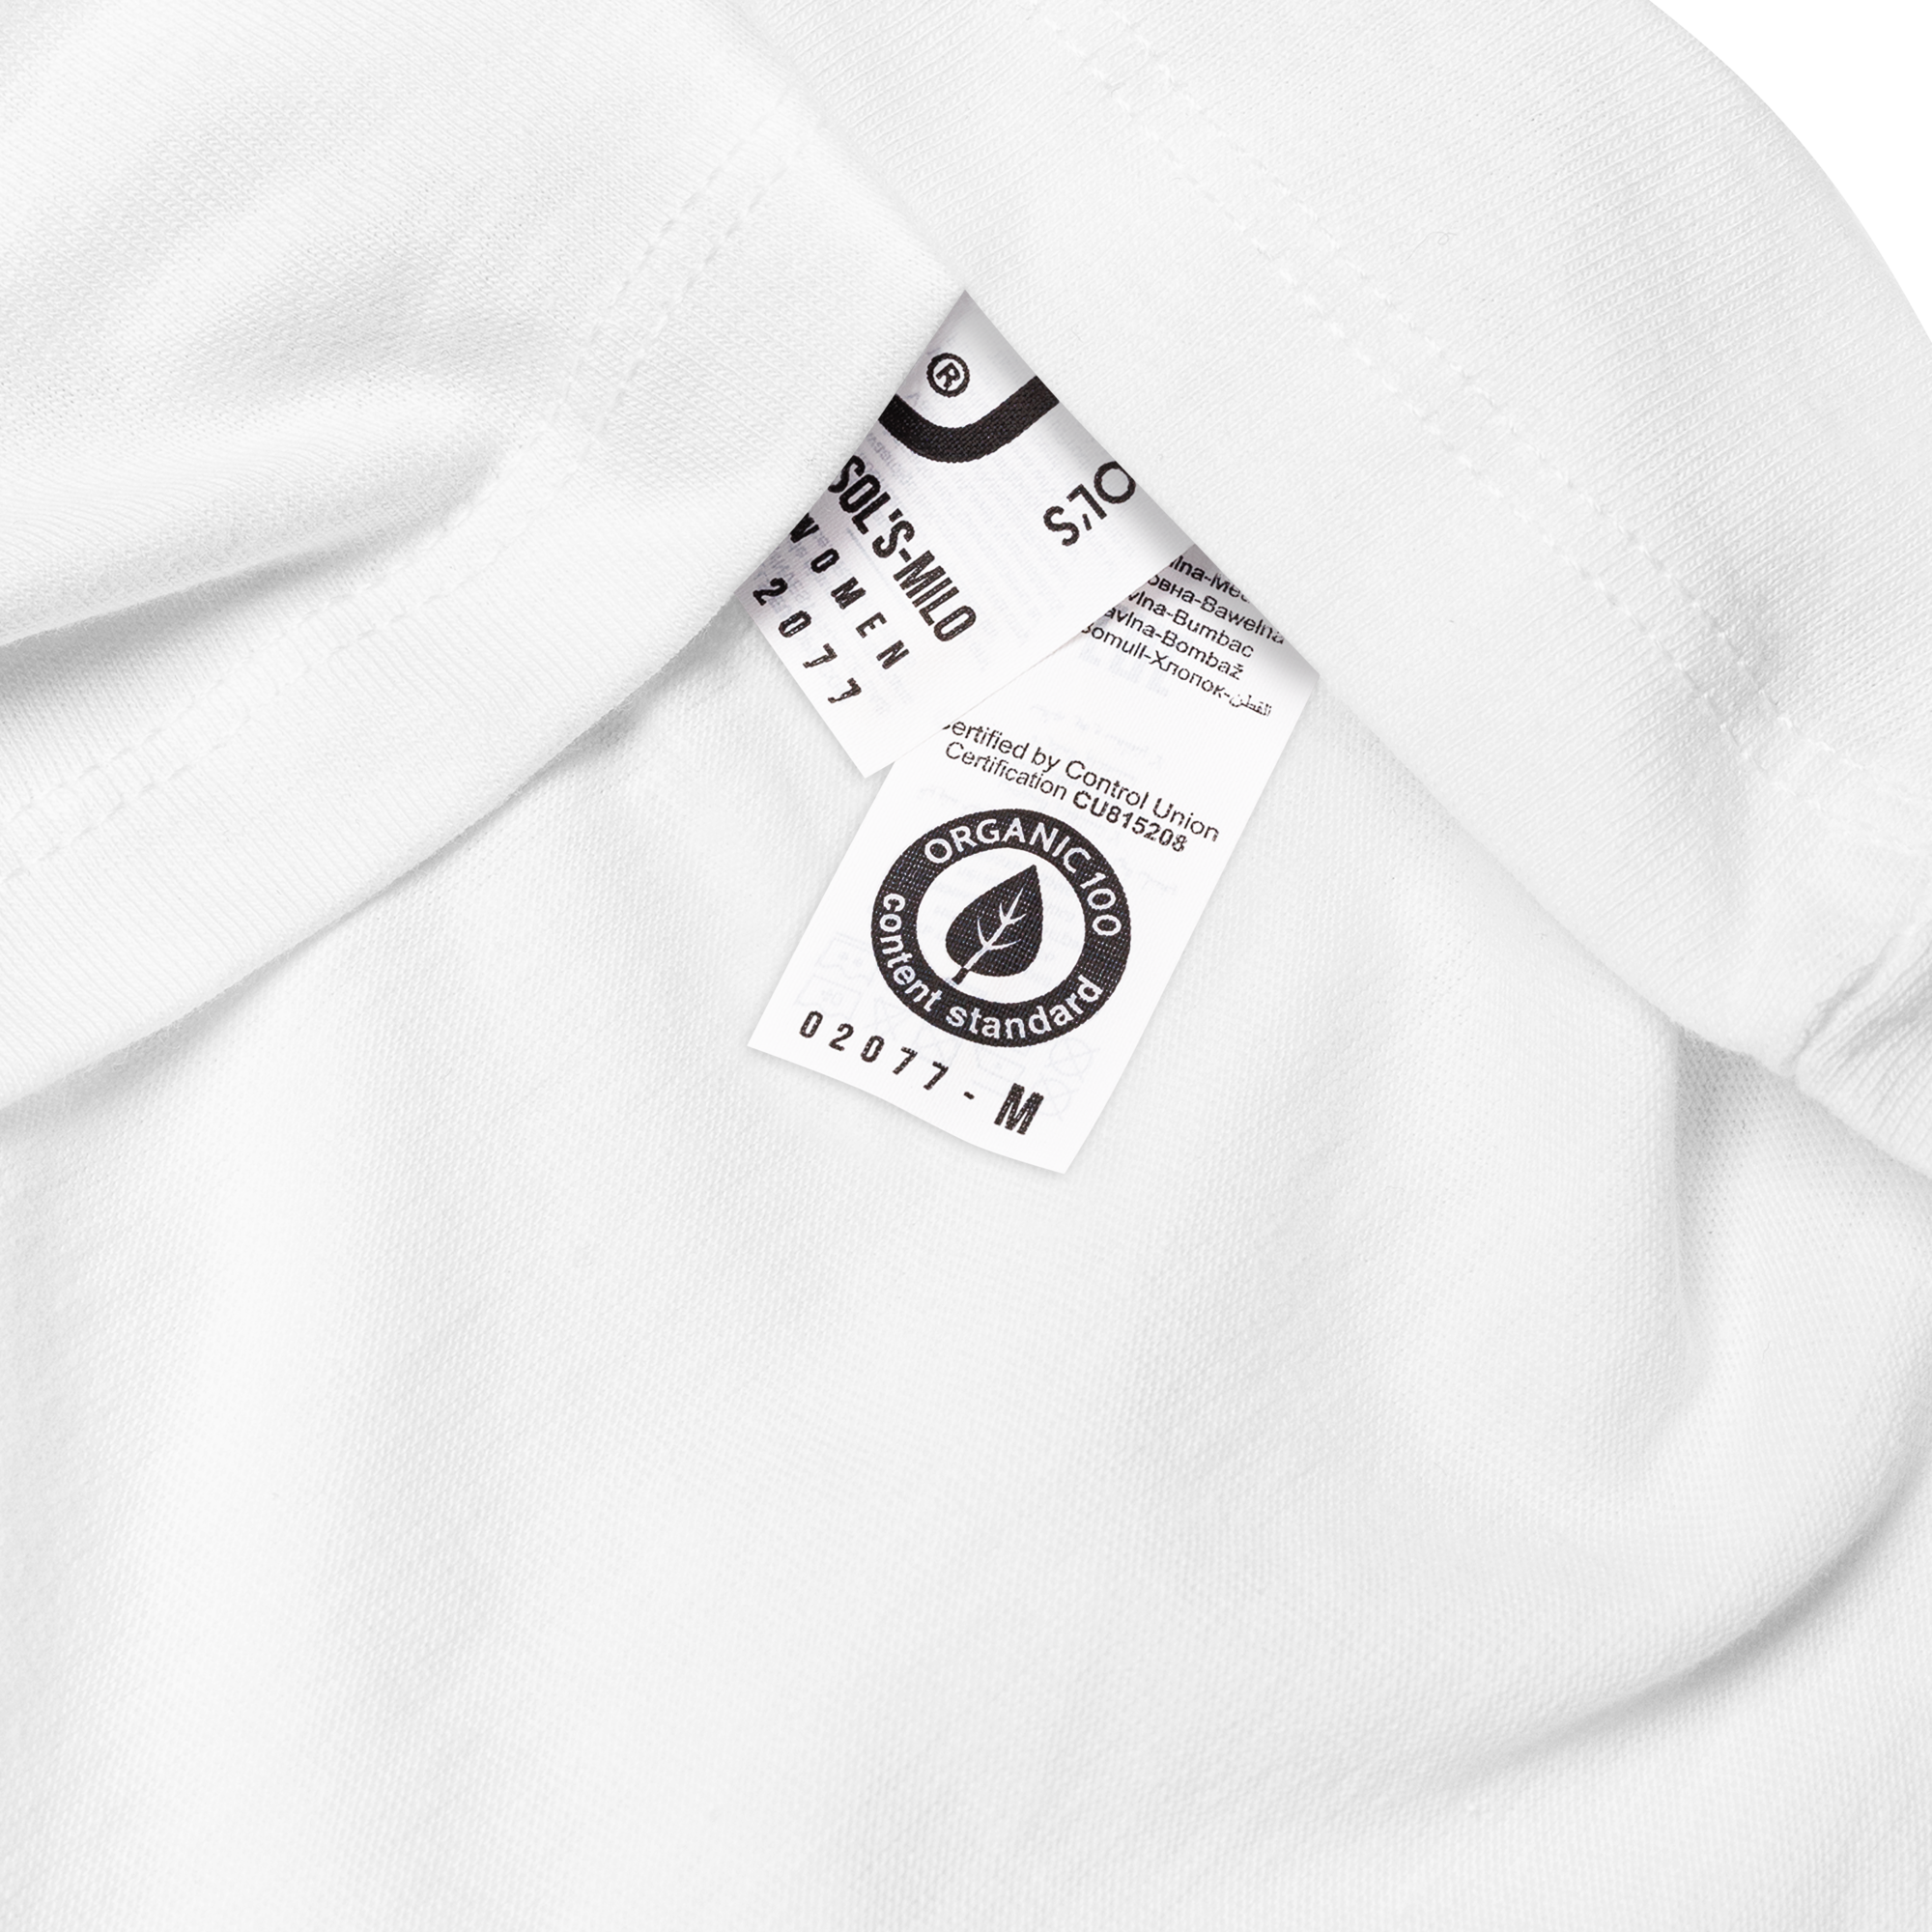 #JPNGarage GTR T-Shirt - #BNR34 Rot Damen